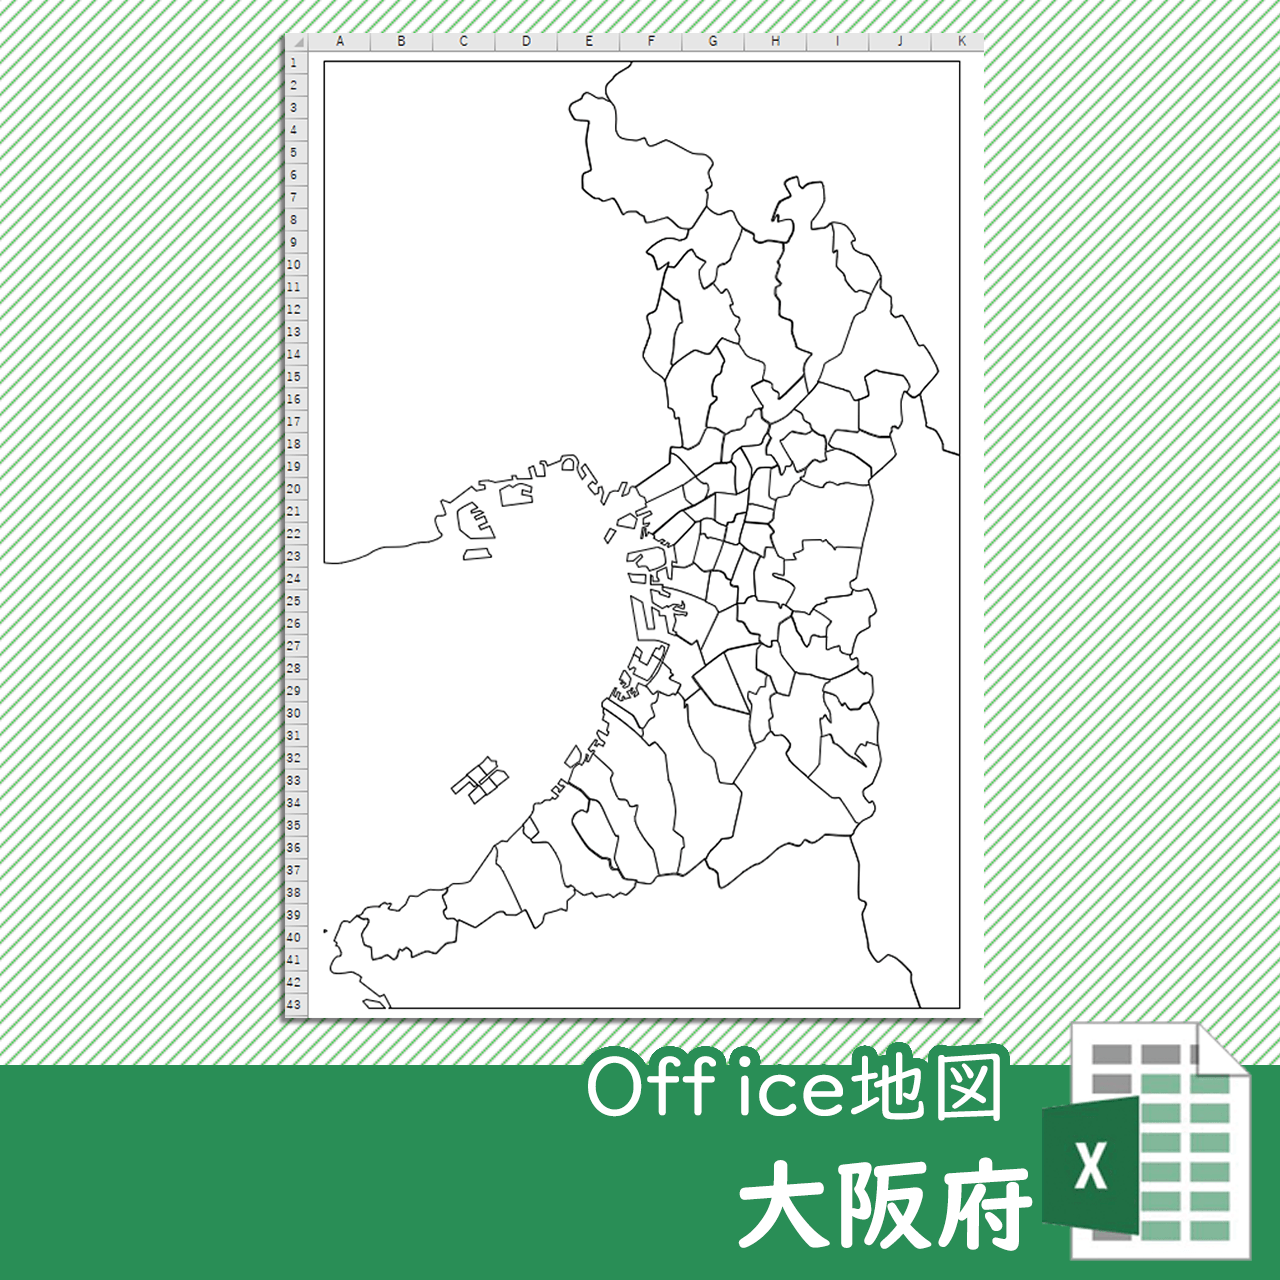 大阪府のoffice地図